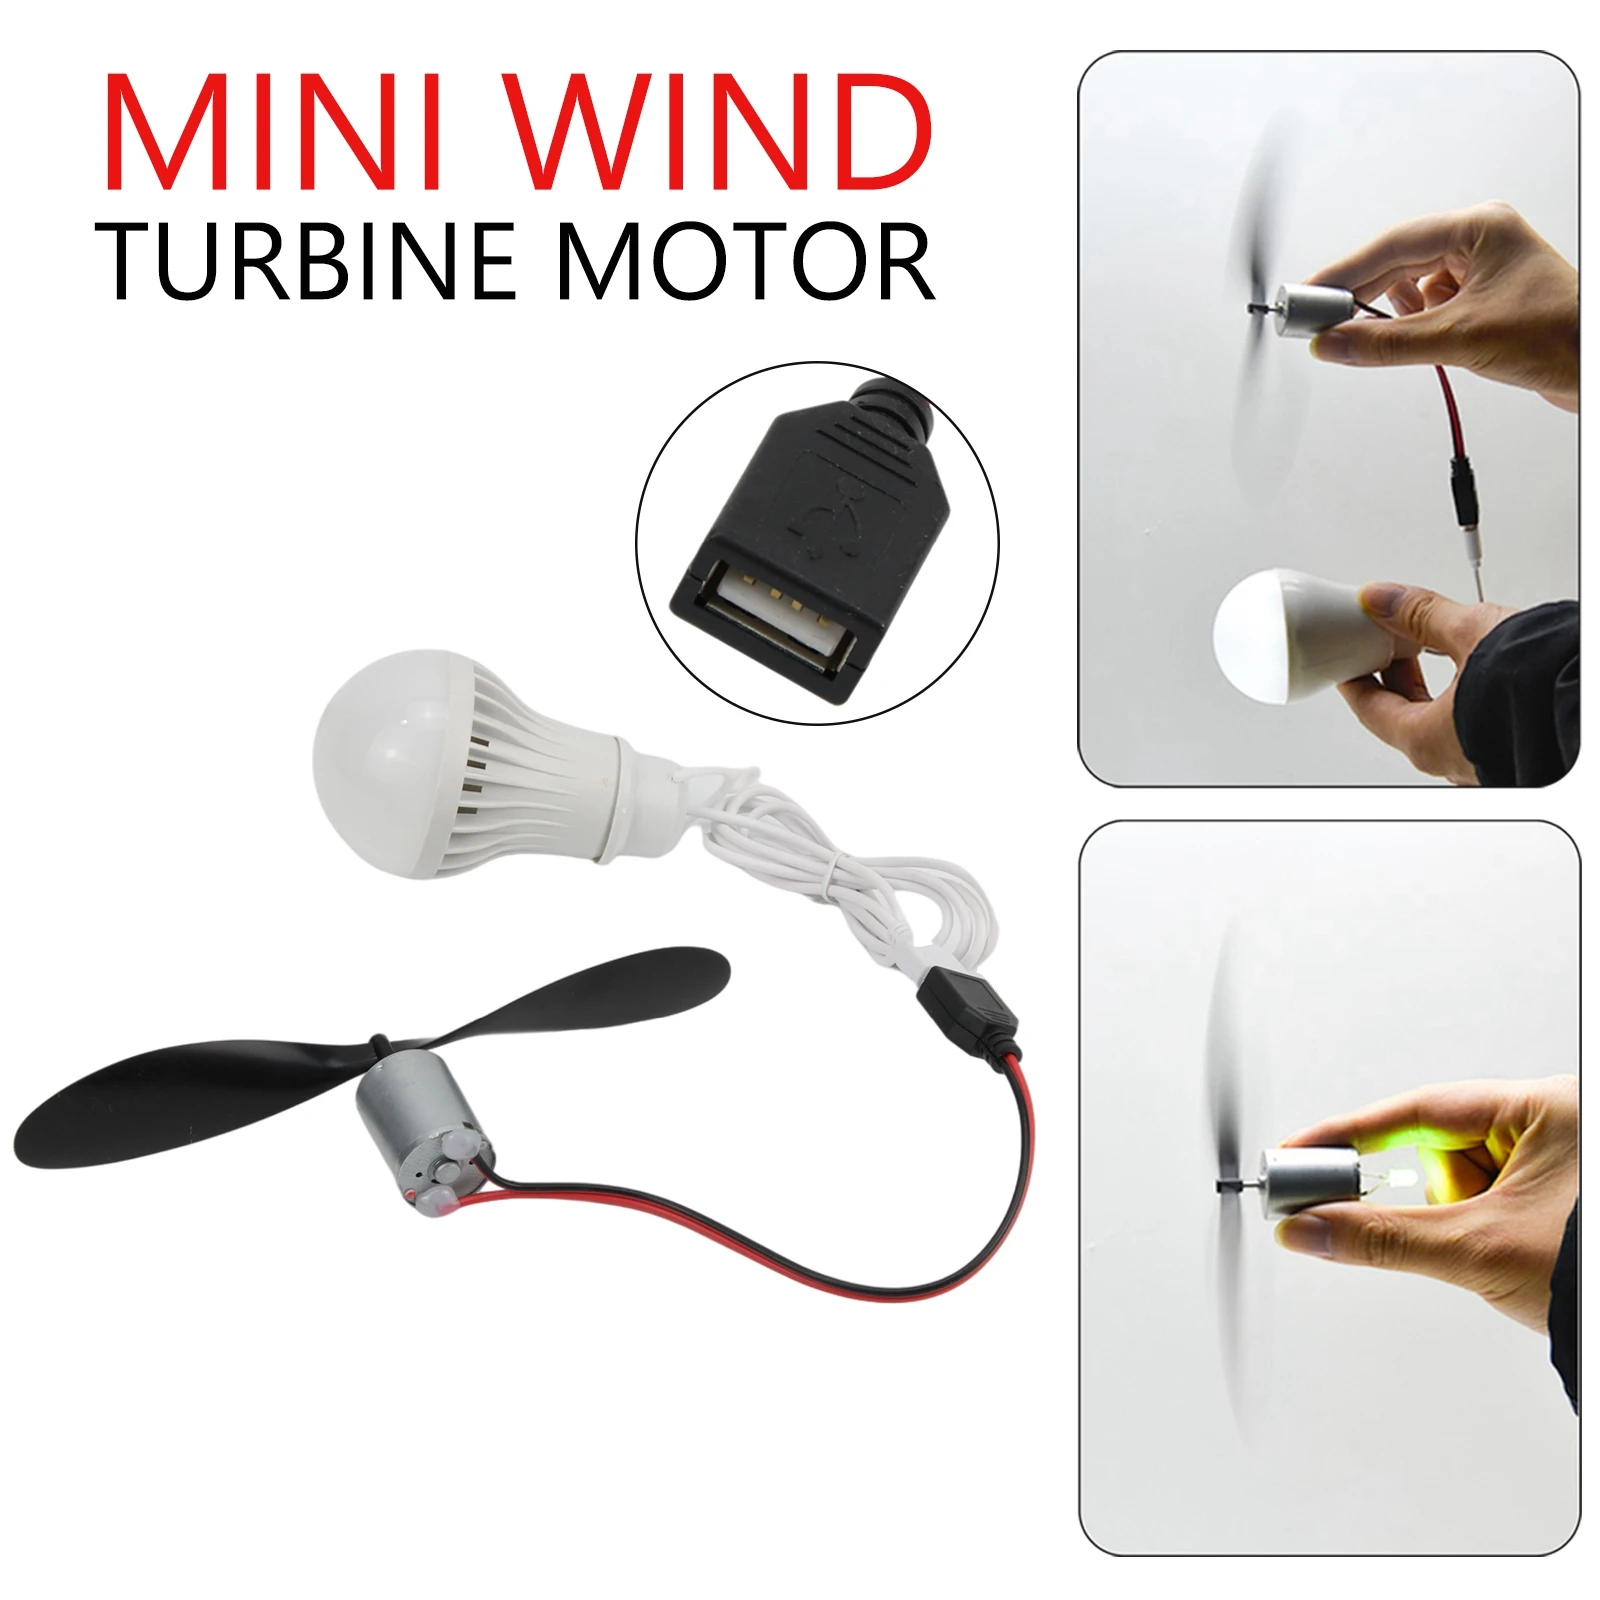 

5W USB Mini Wind Turbine Motor Led Windmill Micro Wind Turbine Wind Turbine Science 1M 20V Teaching Model for student